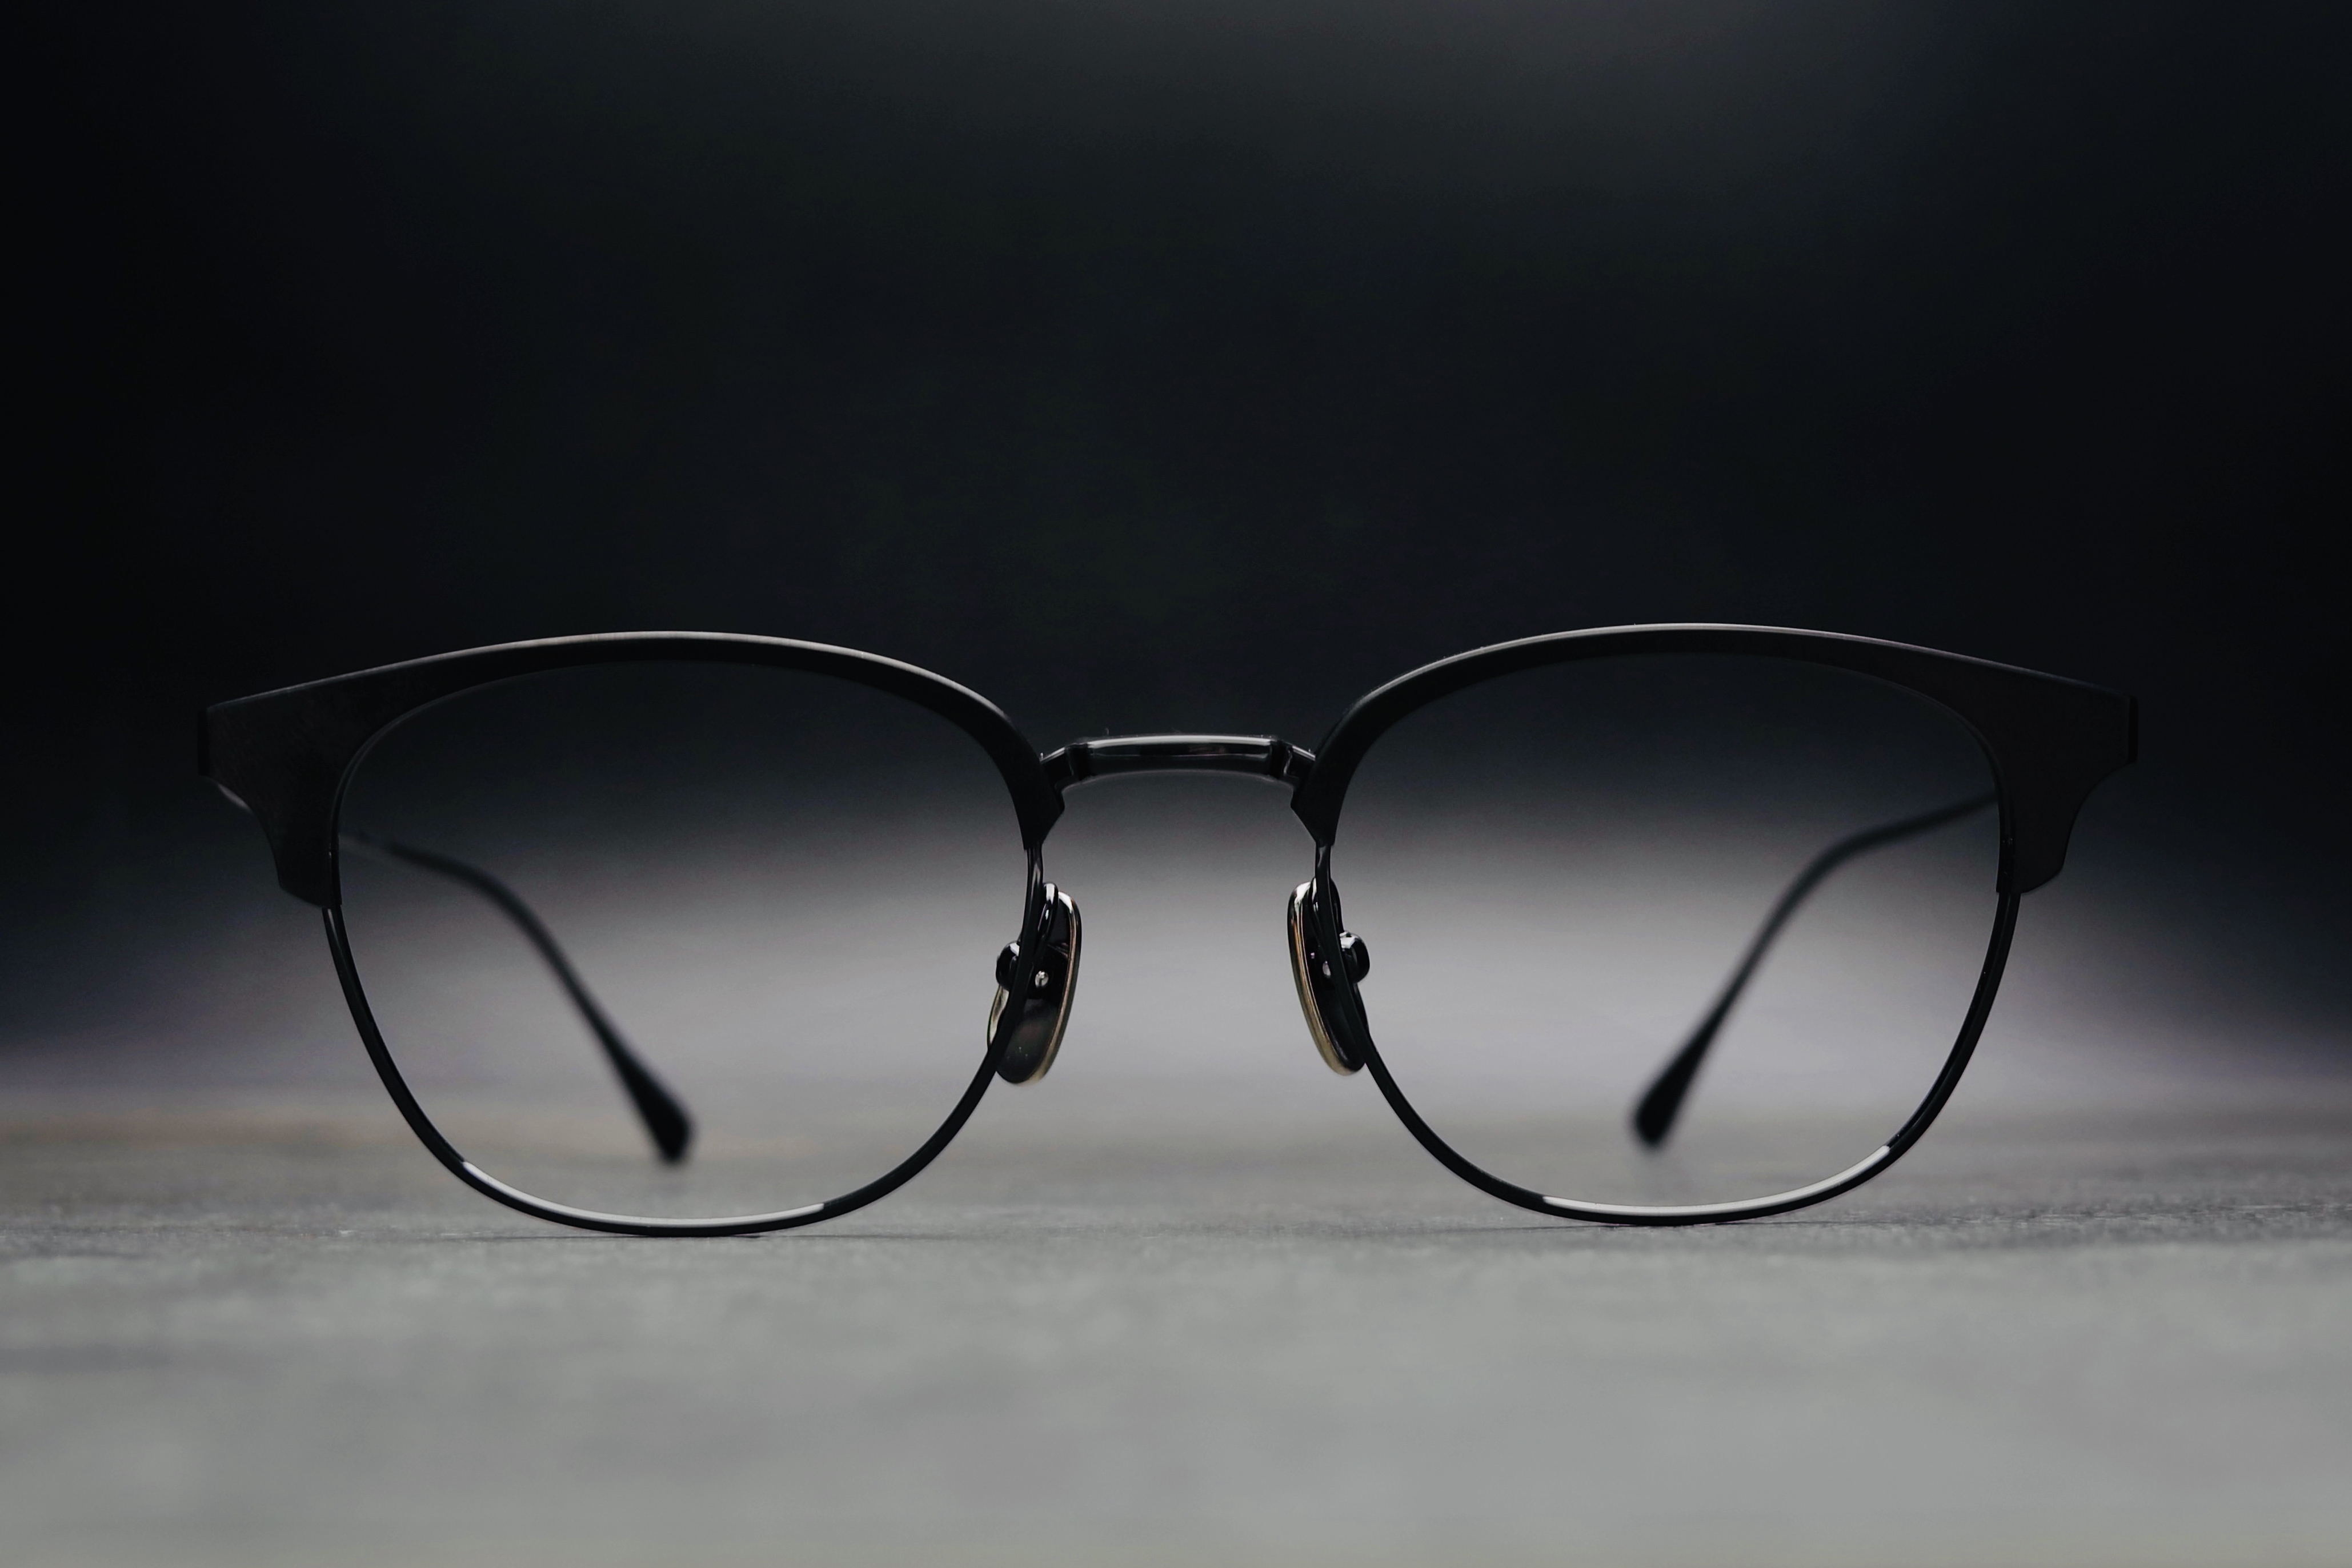 日本眼镜品牌 JAPONISM 迎来 Sense 全金属制品